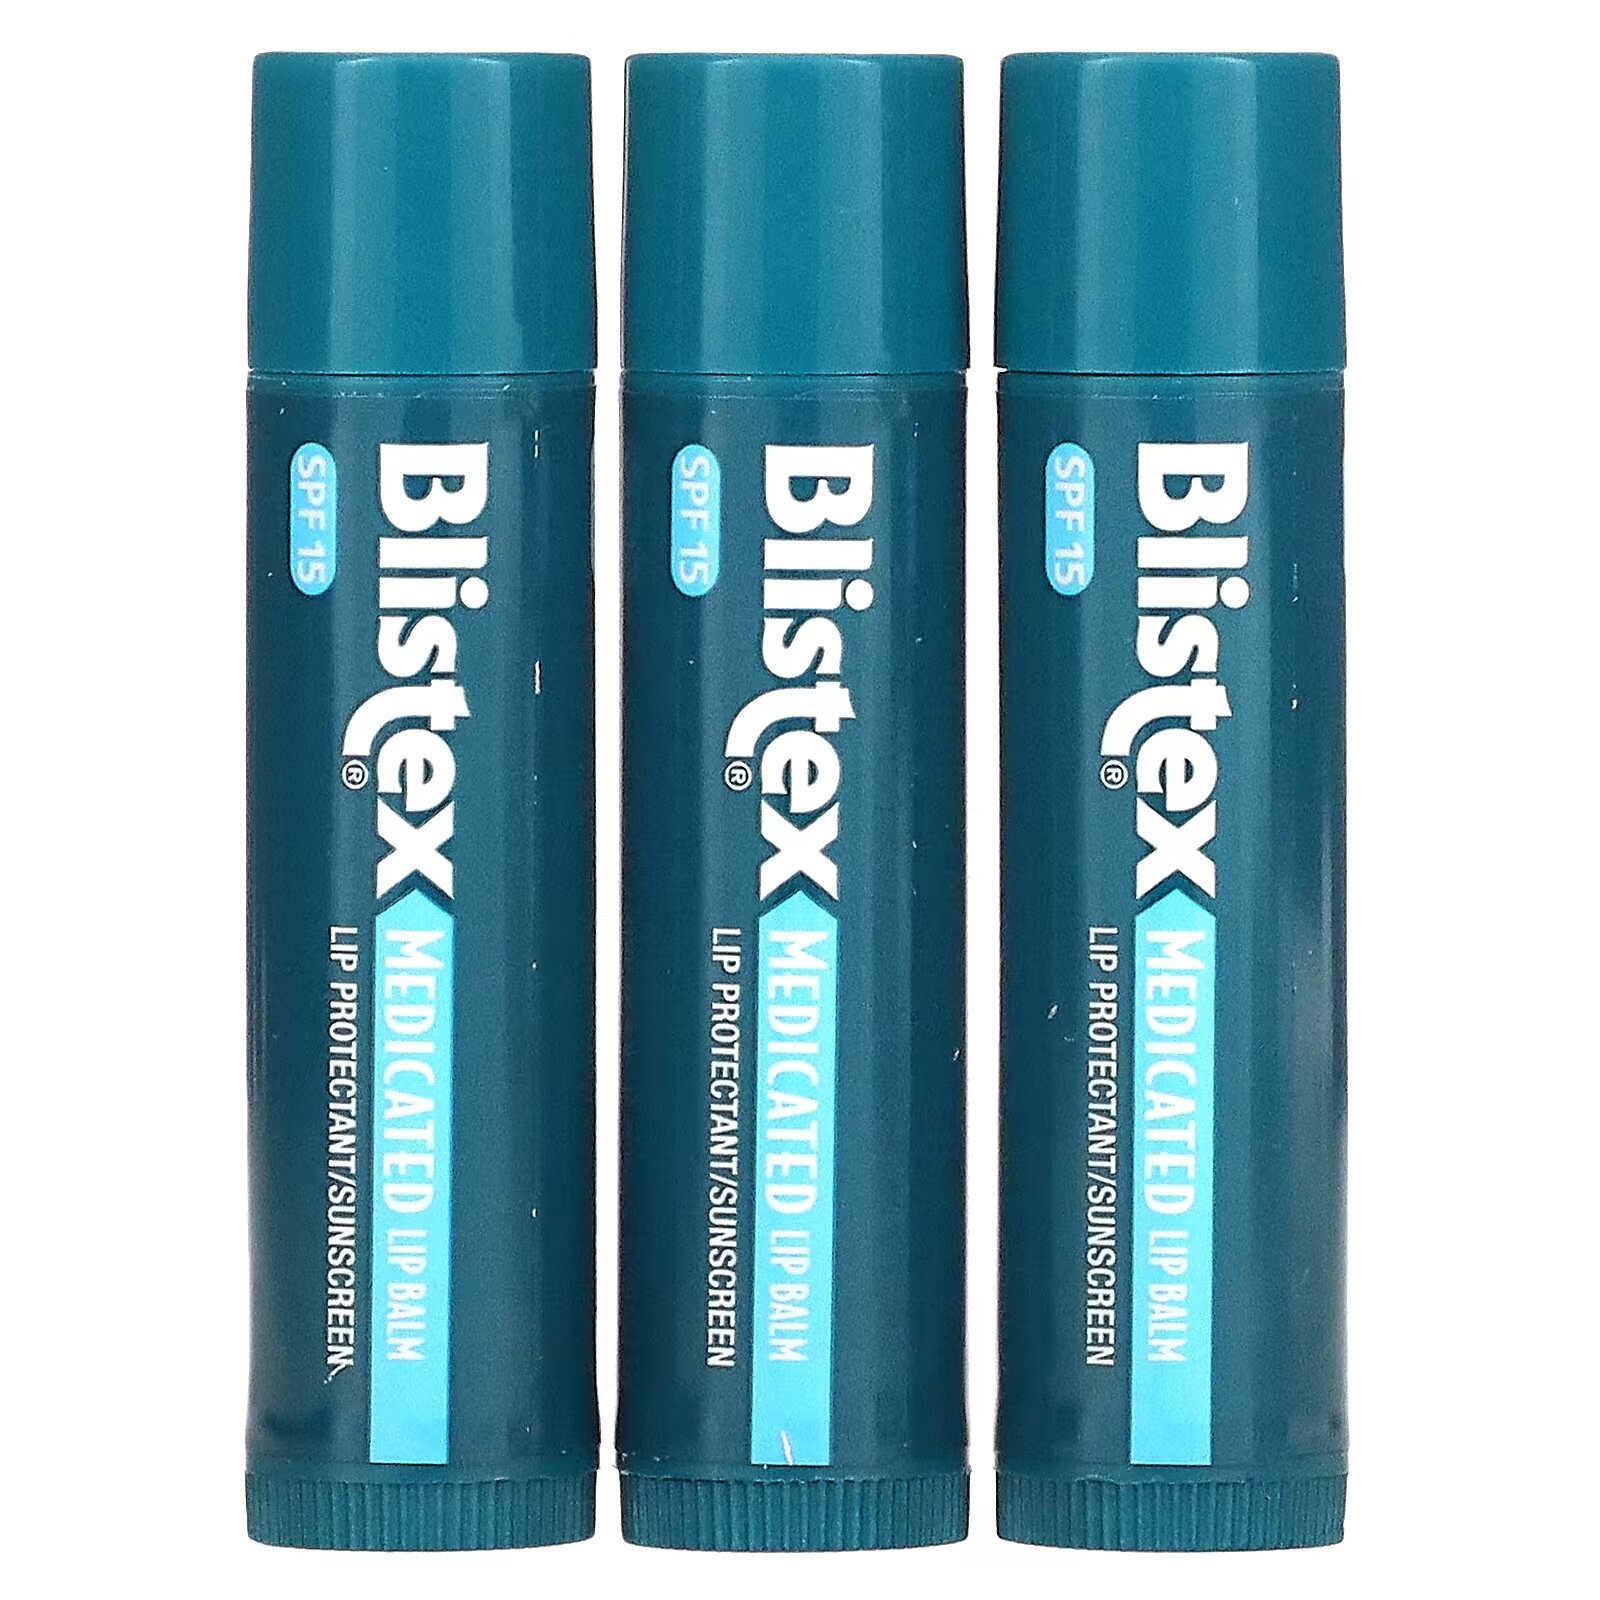 Заживляющий бальзам для губ Blistex с солнцезащитным фильтром SPF 15, в упаковке 3 бальзама по 4,25 г palmer s ультраувлажняющий бальзам для губ с spf 15 оригинальный 2 упаковки 8 г 0 30 унции